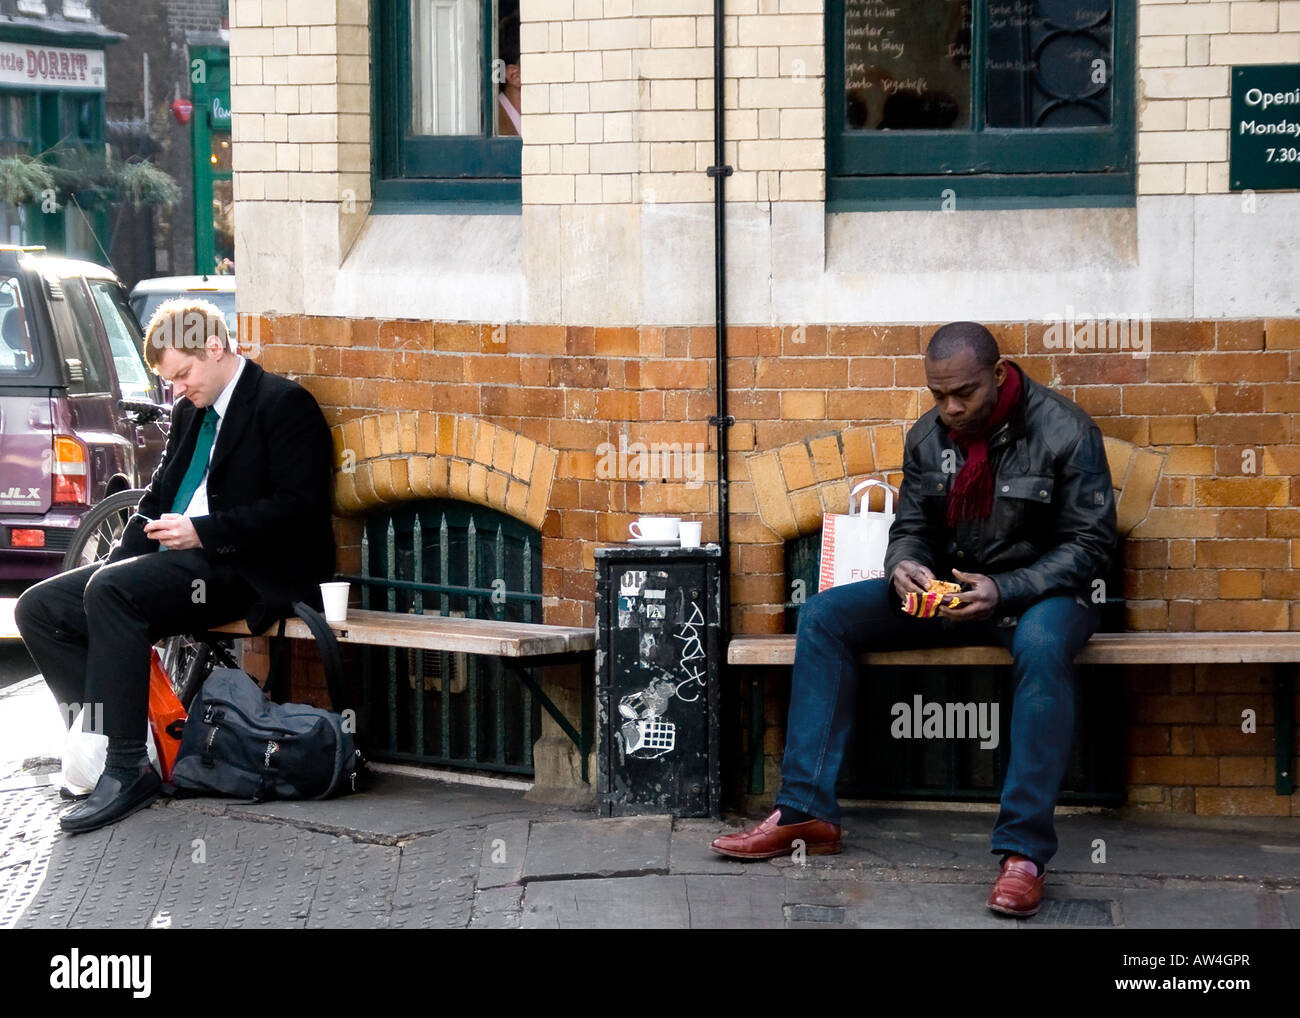 London candid shot de dos personas que tengan un descanso, una negra, una blanca Foto de stock